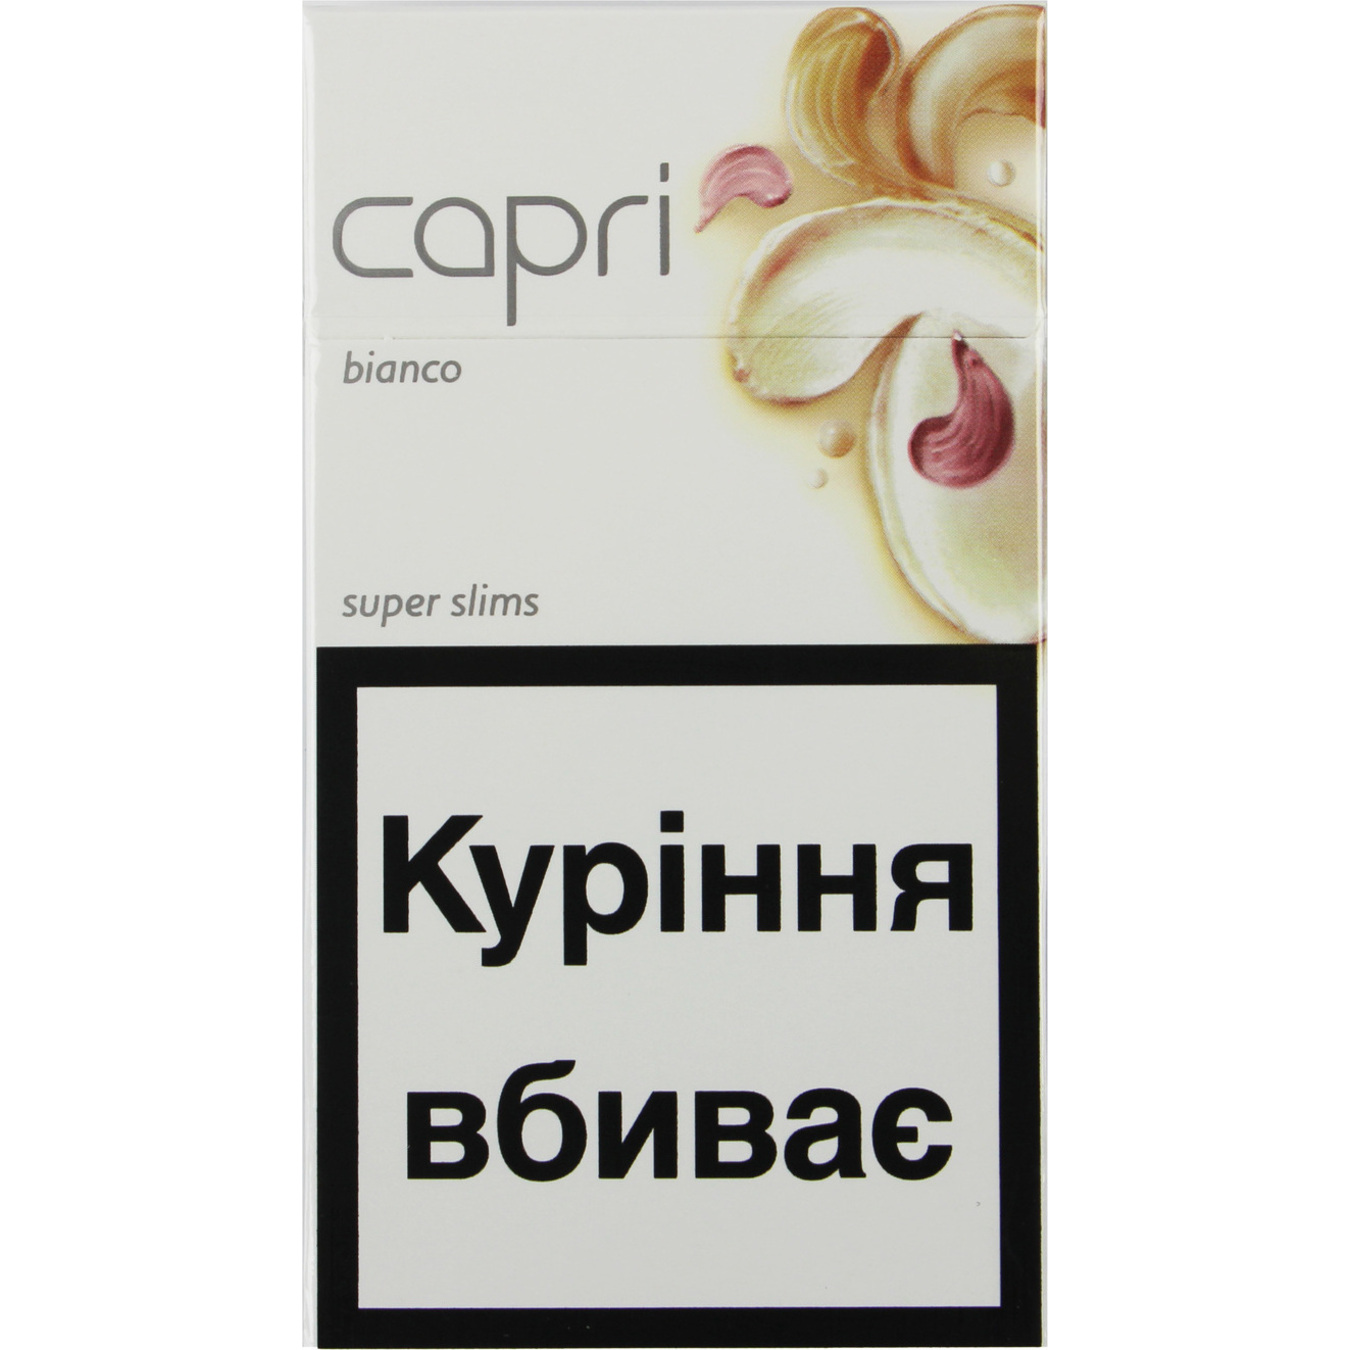 Сигареты Capri Bianco 20шт (цена указана без акциза)